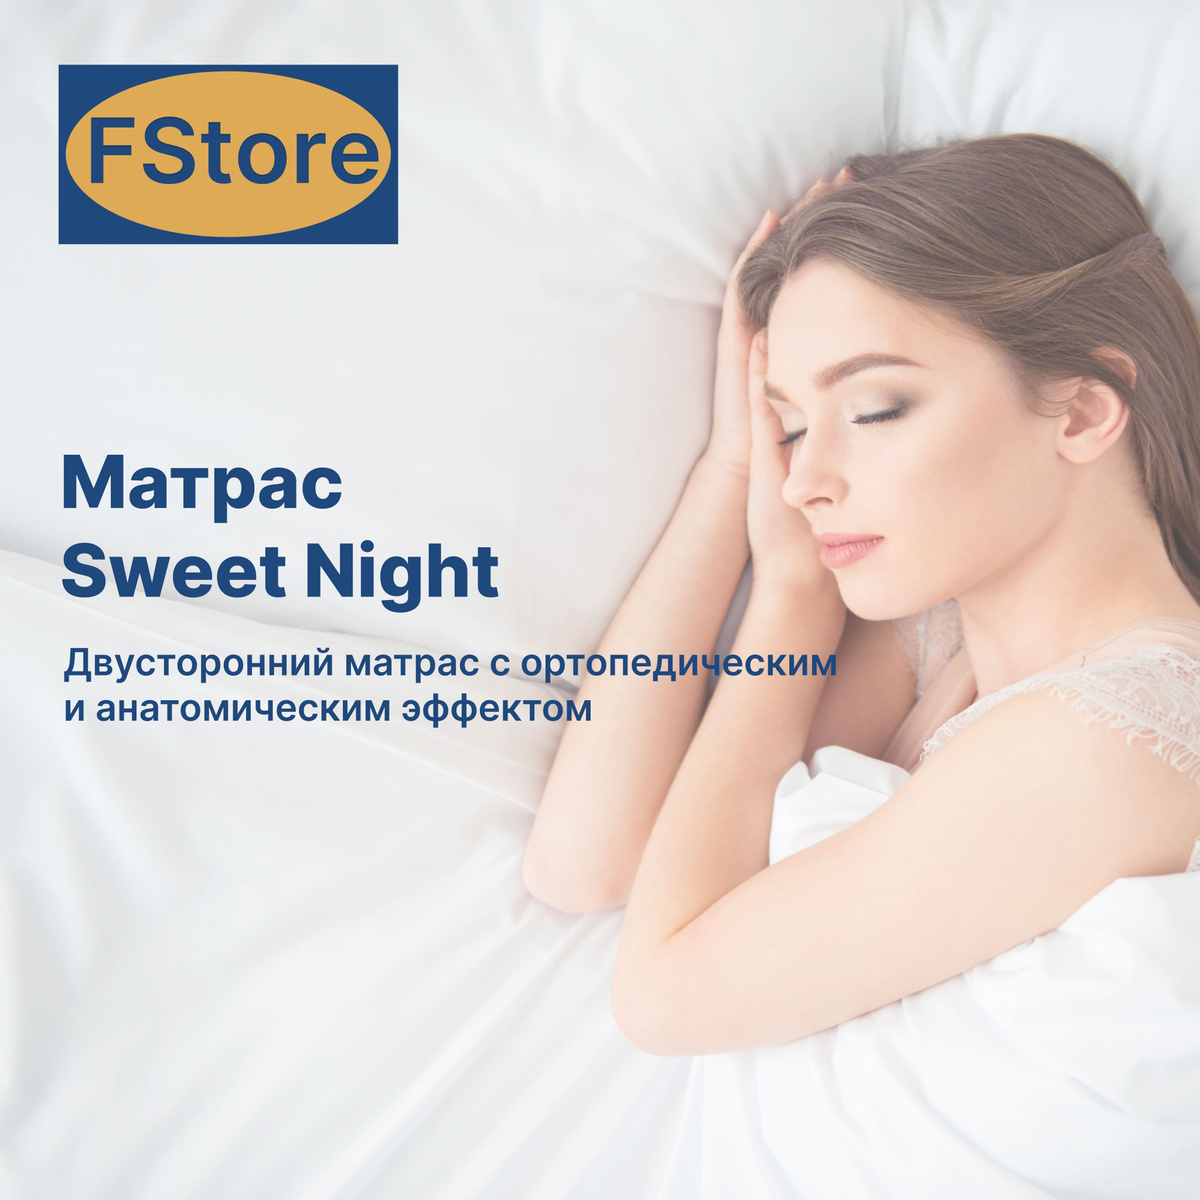 Матрас FStore Sweet Night